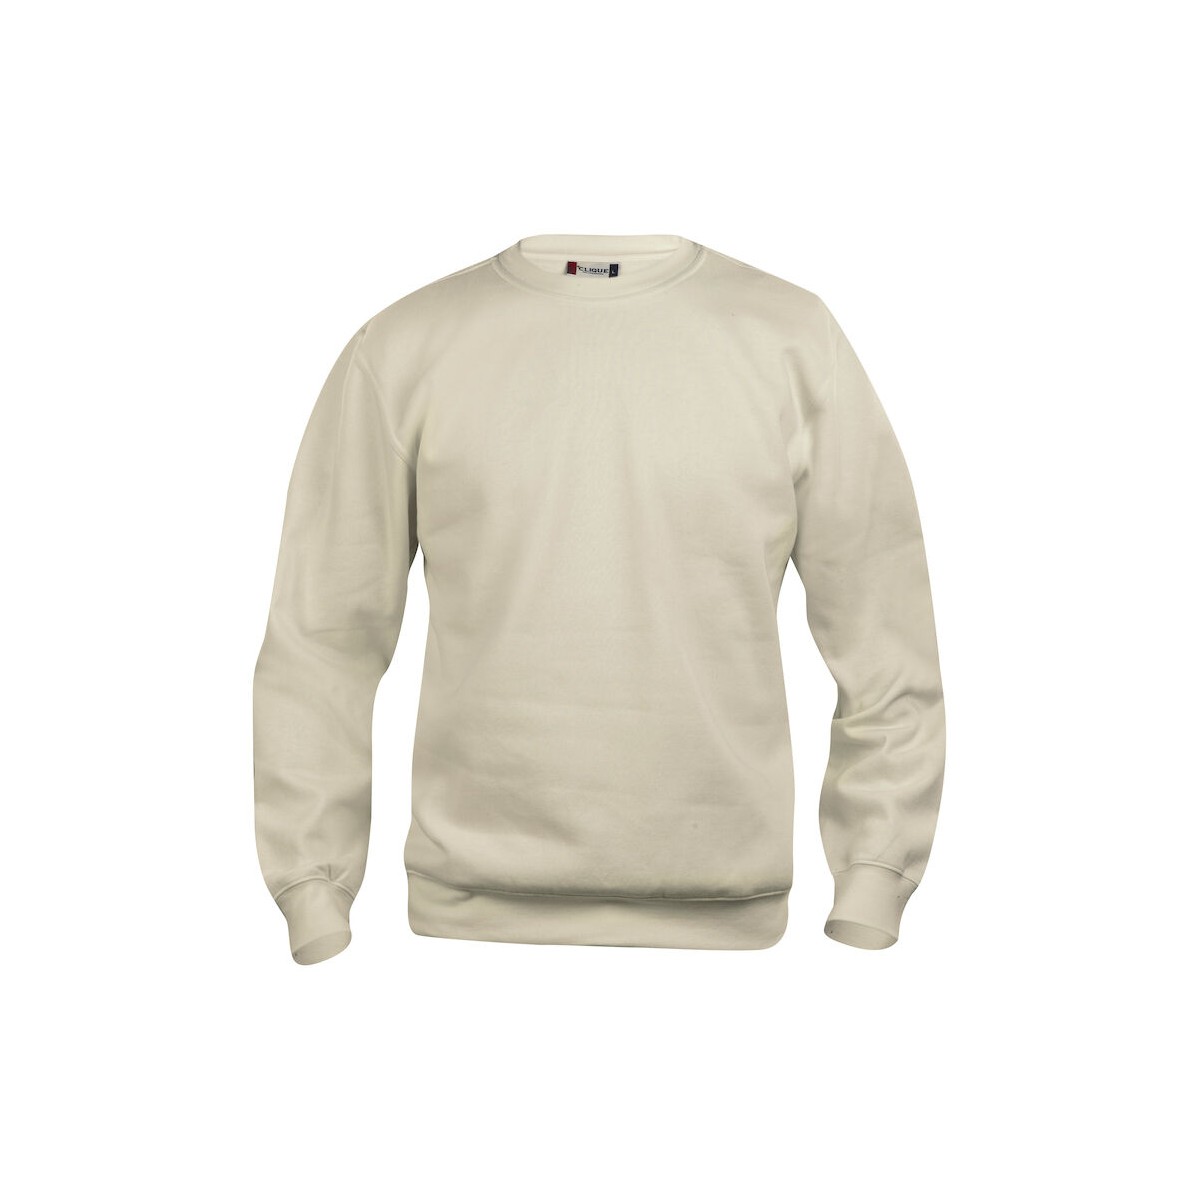 Sweatshirt col rond unisexe - 65% polyester et 35% coton - CLIQUE - Personnalisable en petite quantité - Couleur beige